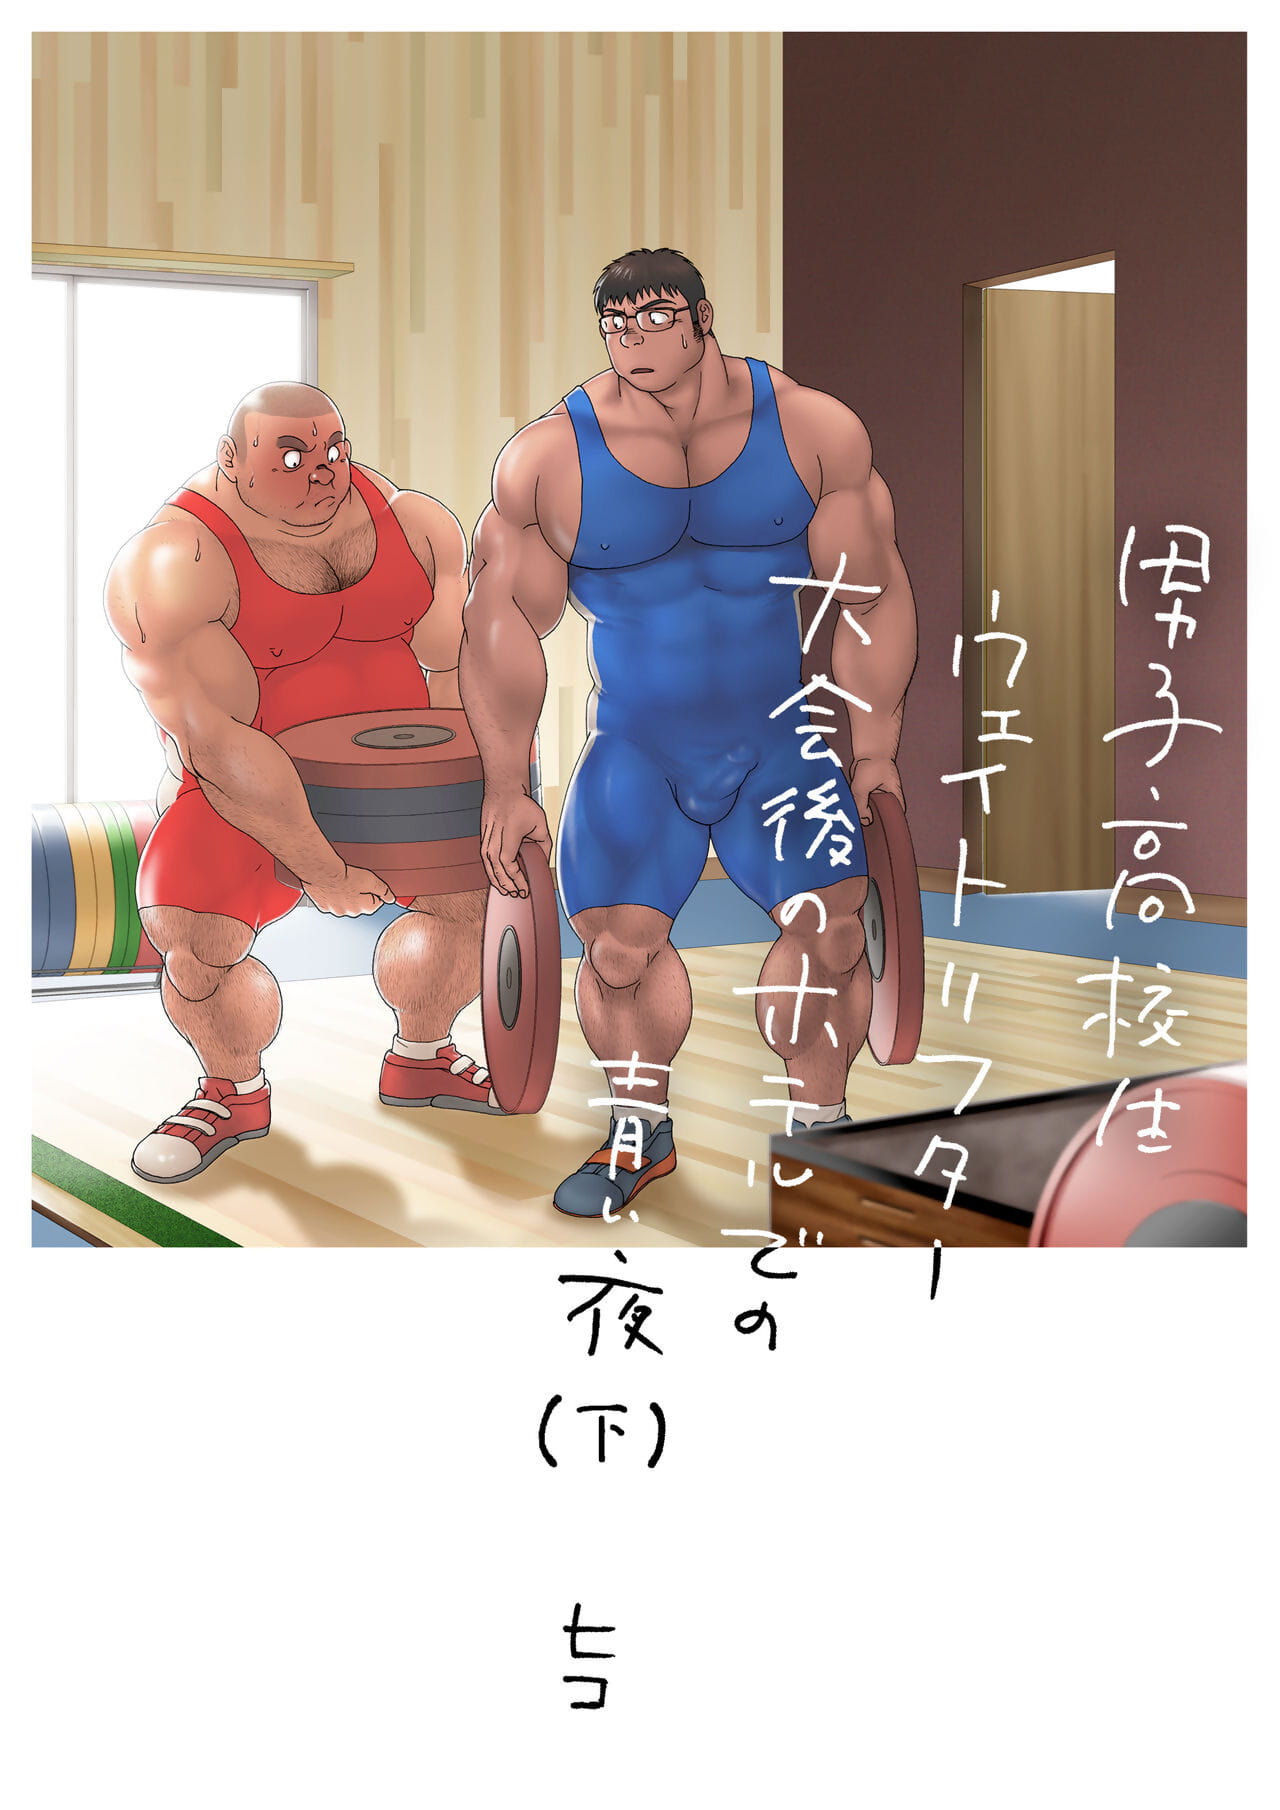 漫画以及动画之中 koukousei 举重运动员 泰开 去 没有 酒店 德 没有 葵 夜的